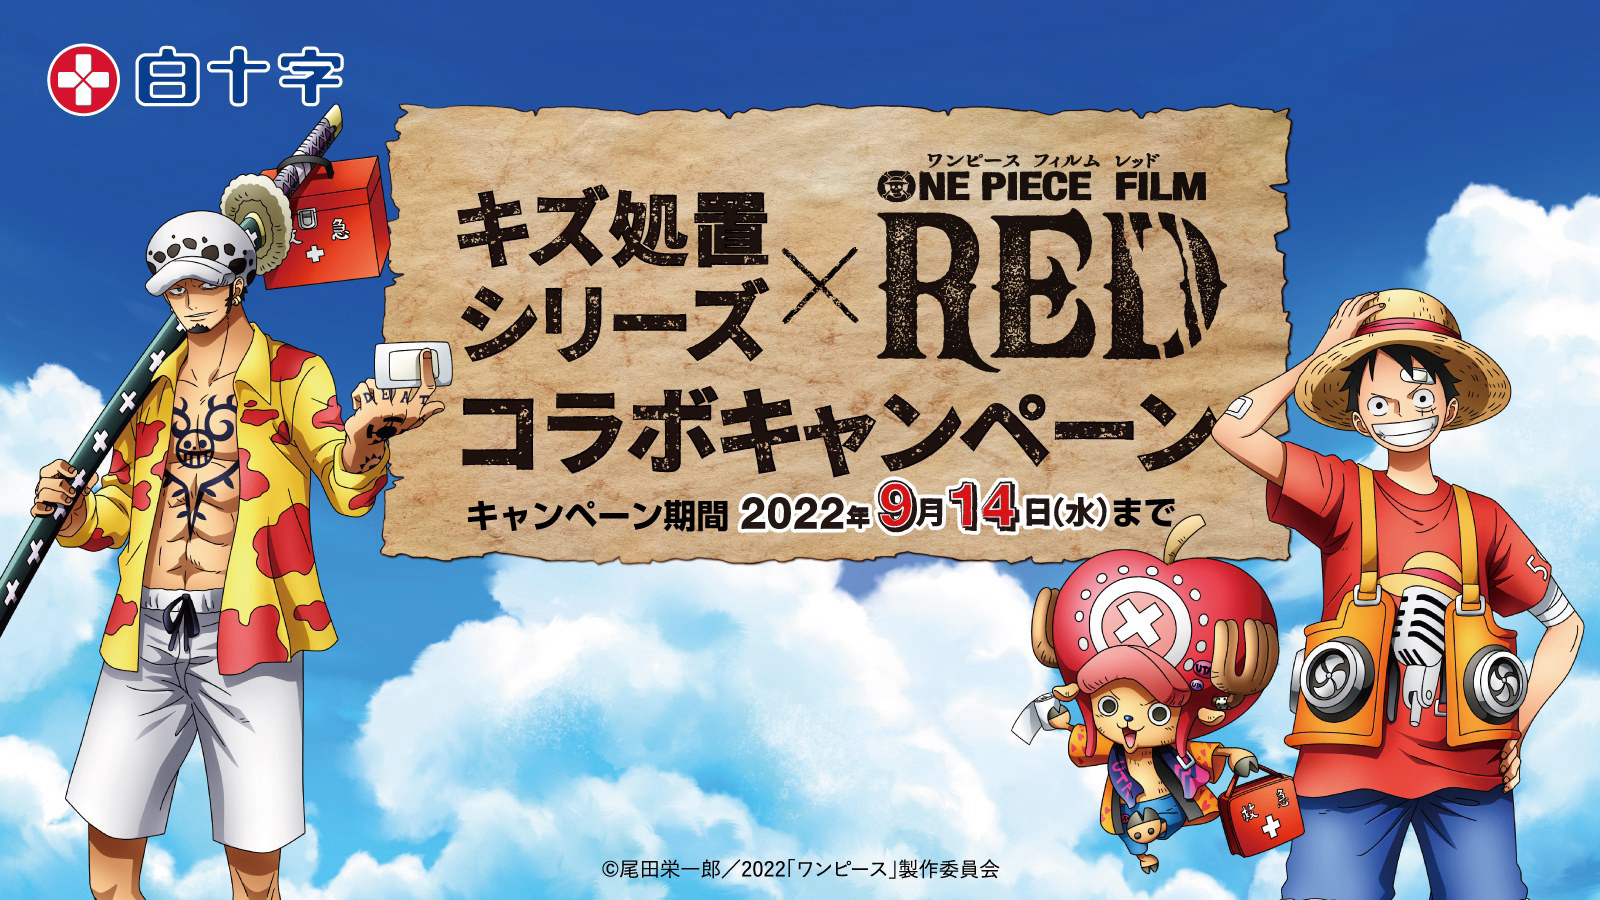 Vua Hải Tặc: Cuộc phiêu lưu đến đảo máy đồng hồ One Piece Movie 2: Nejimaki-jima no Daibouken, One Piece: Nejimakijima no Bouken, One Piece: Nejimaki Shima no Bouken